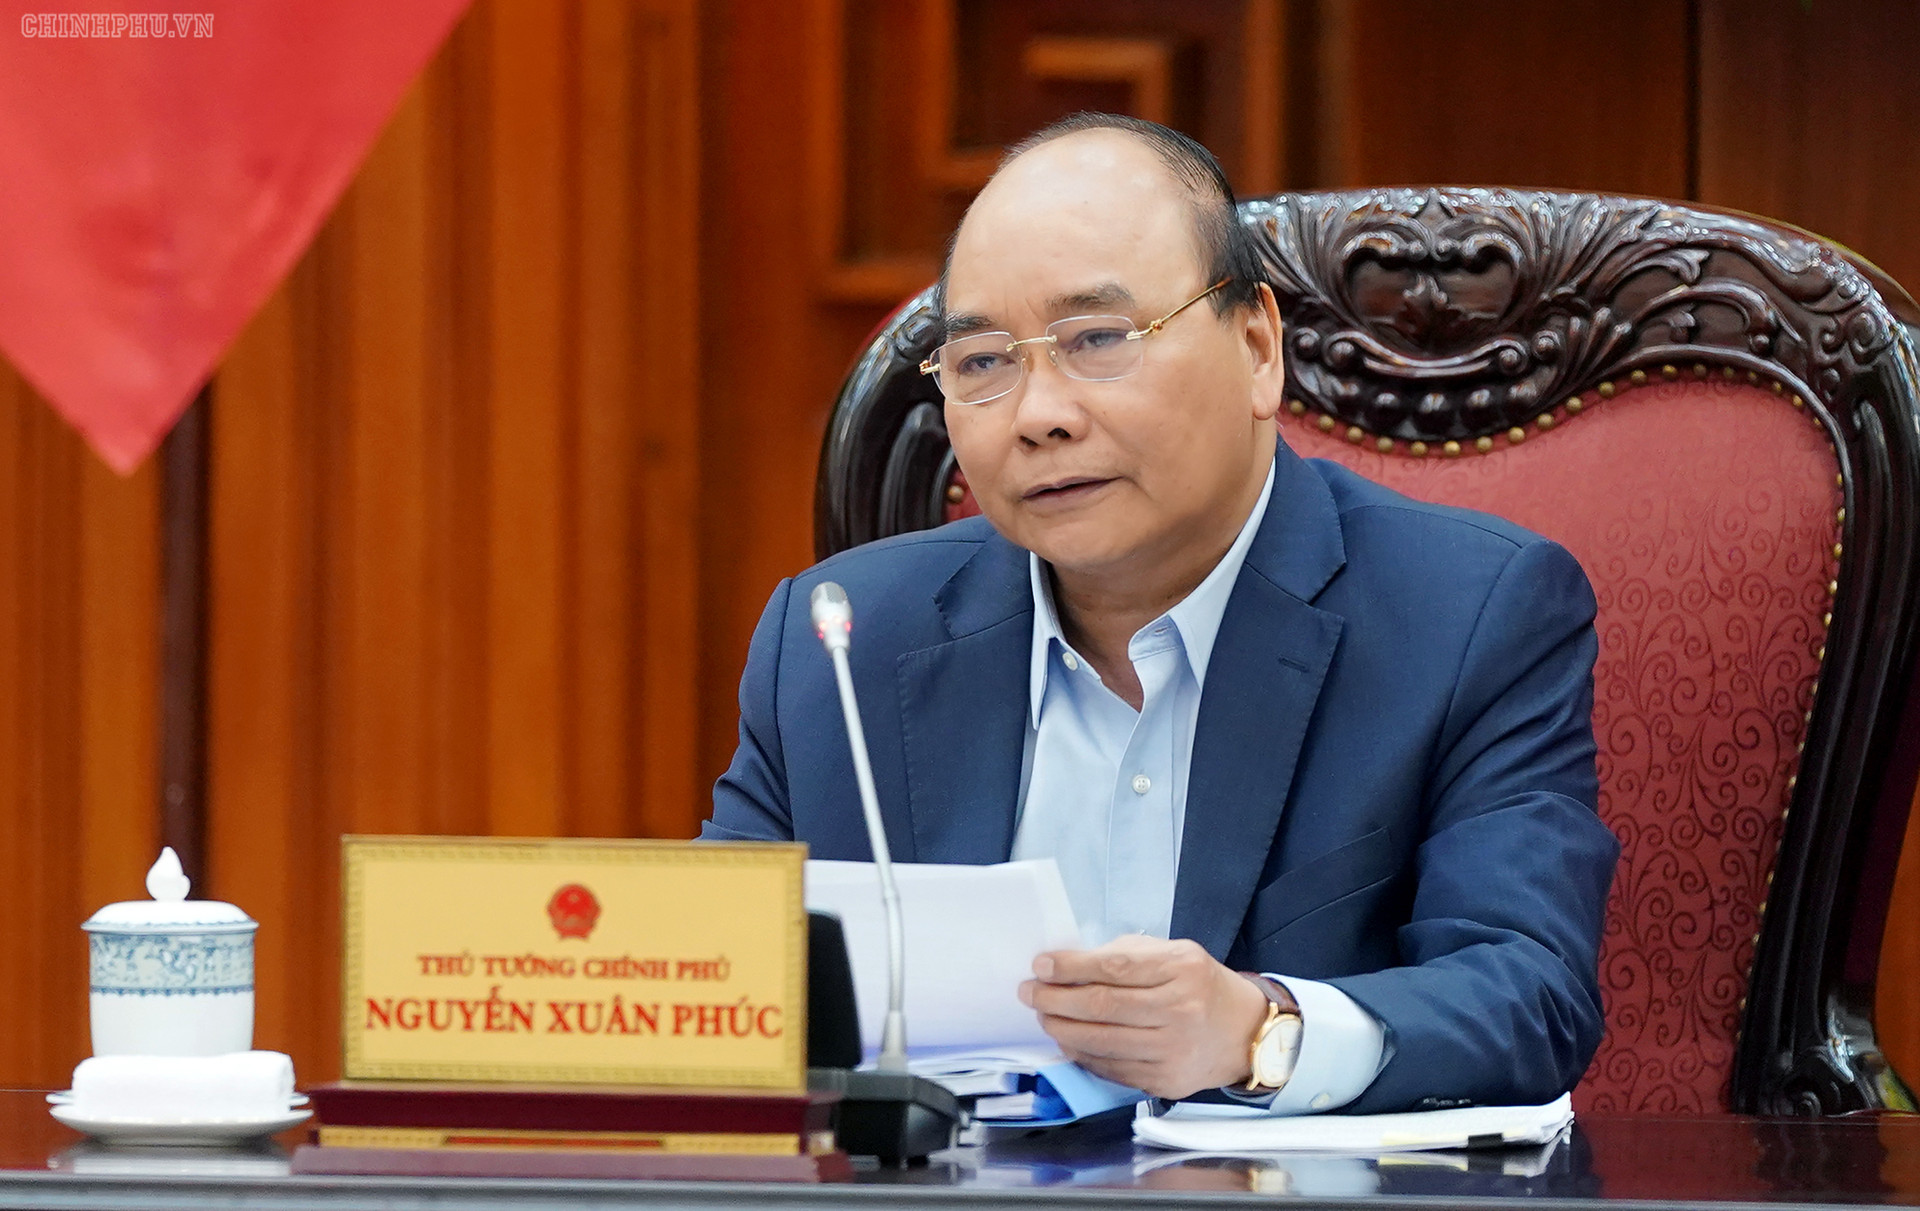 Thủ tướng Nguyễn Xuân Phúc ký ban hành nghị quyết hỗ trợ bằng tiền cho người dân gặp khó khăn vì Covid-19 - Ảnh 1.